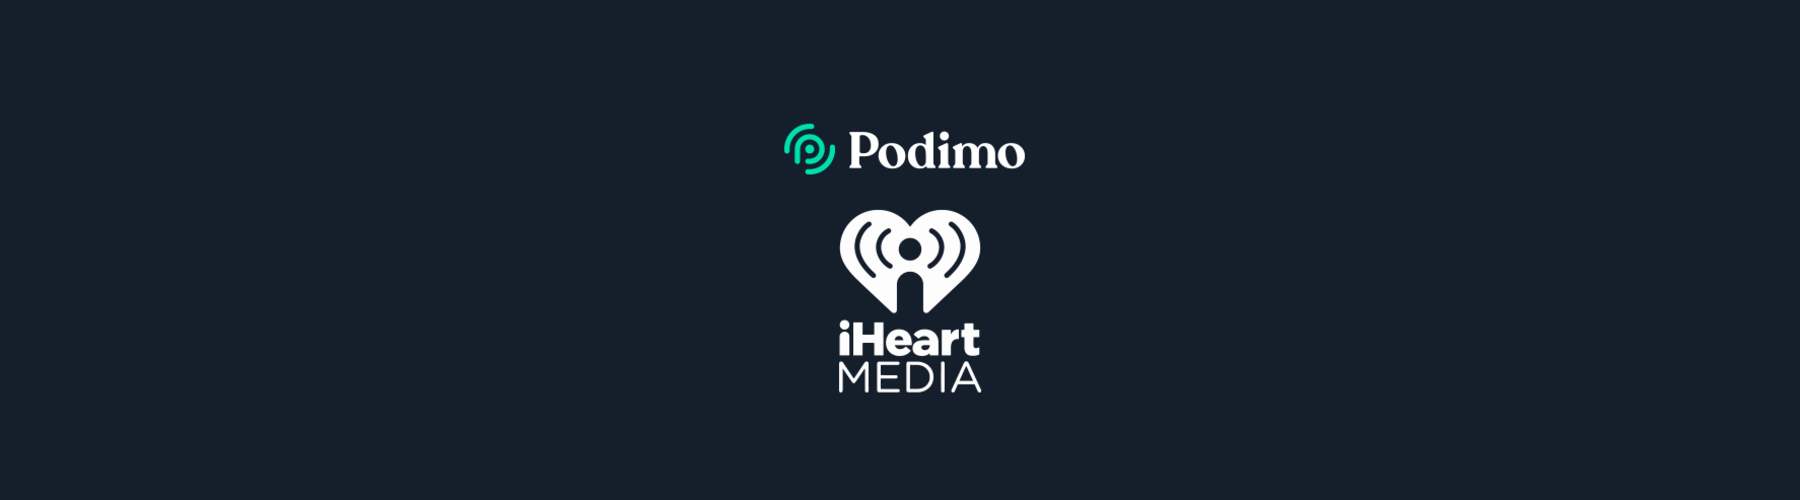 iHeartMedia y Podimo se asocian para traducir y adaptar los pódcasts más exitosos para audiencias de todo el mundo